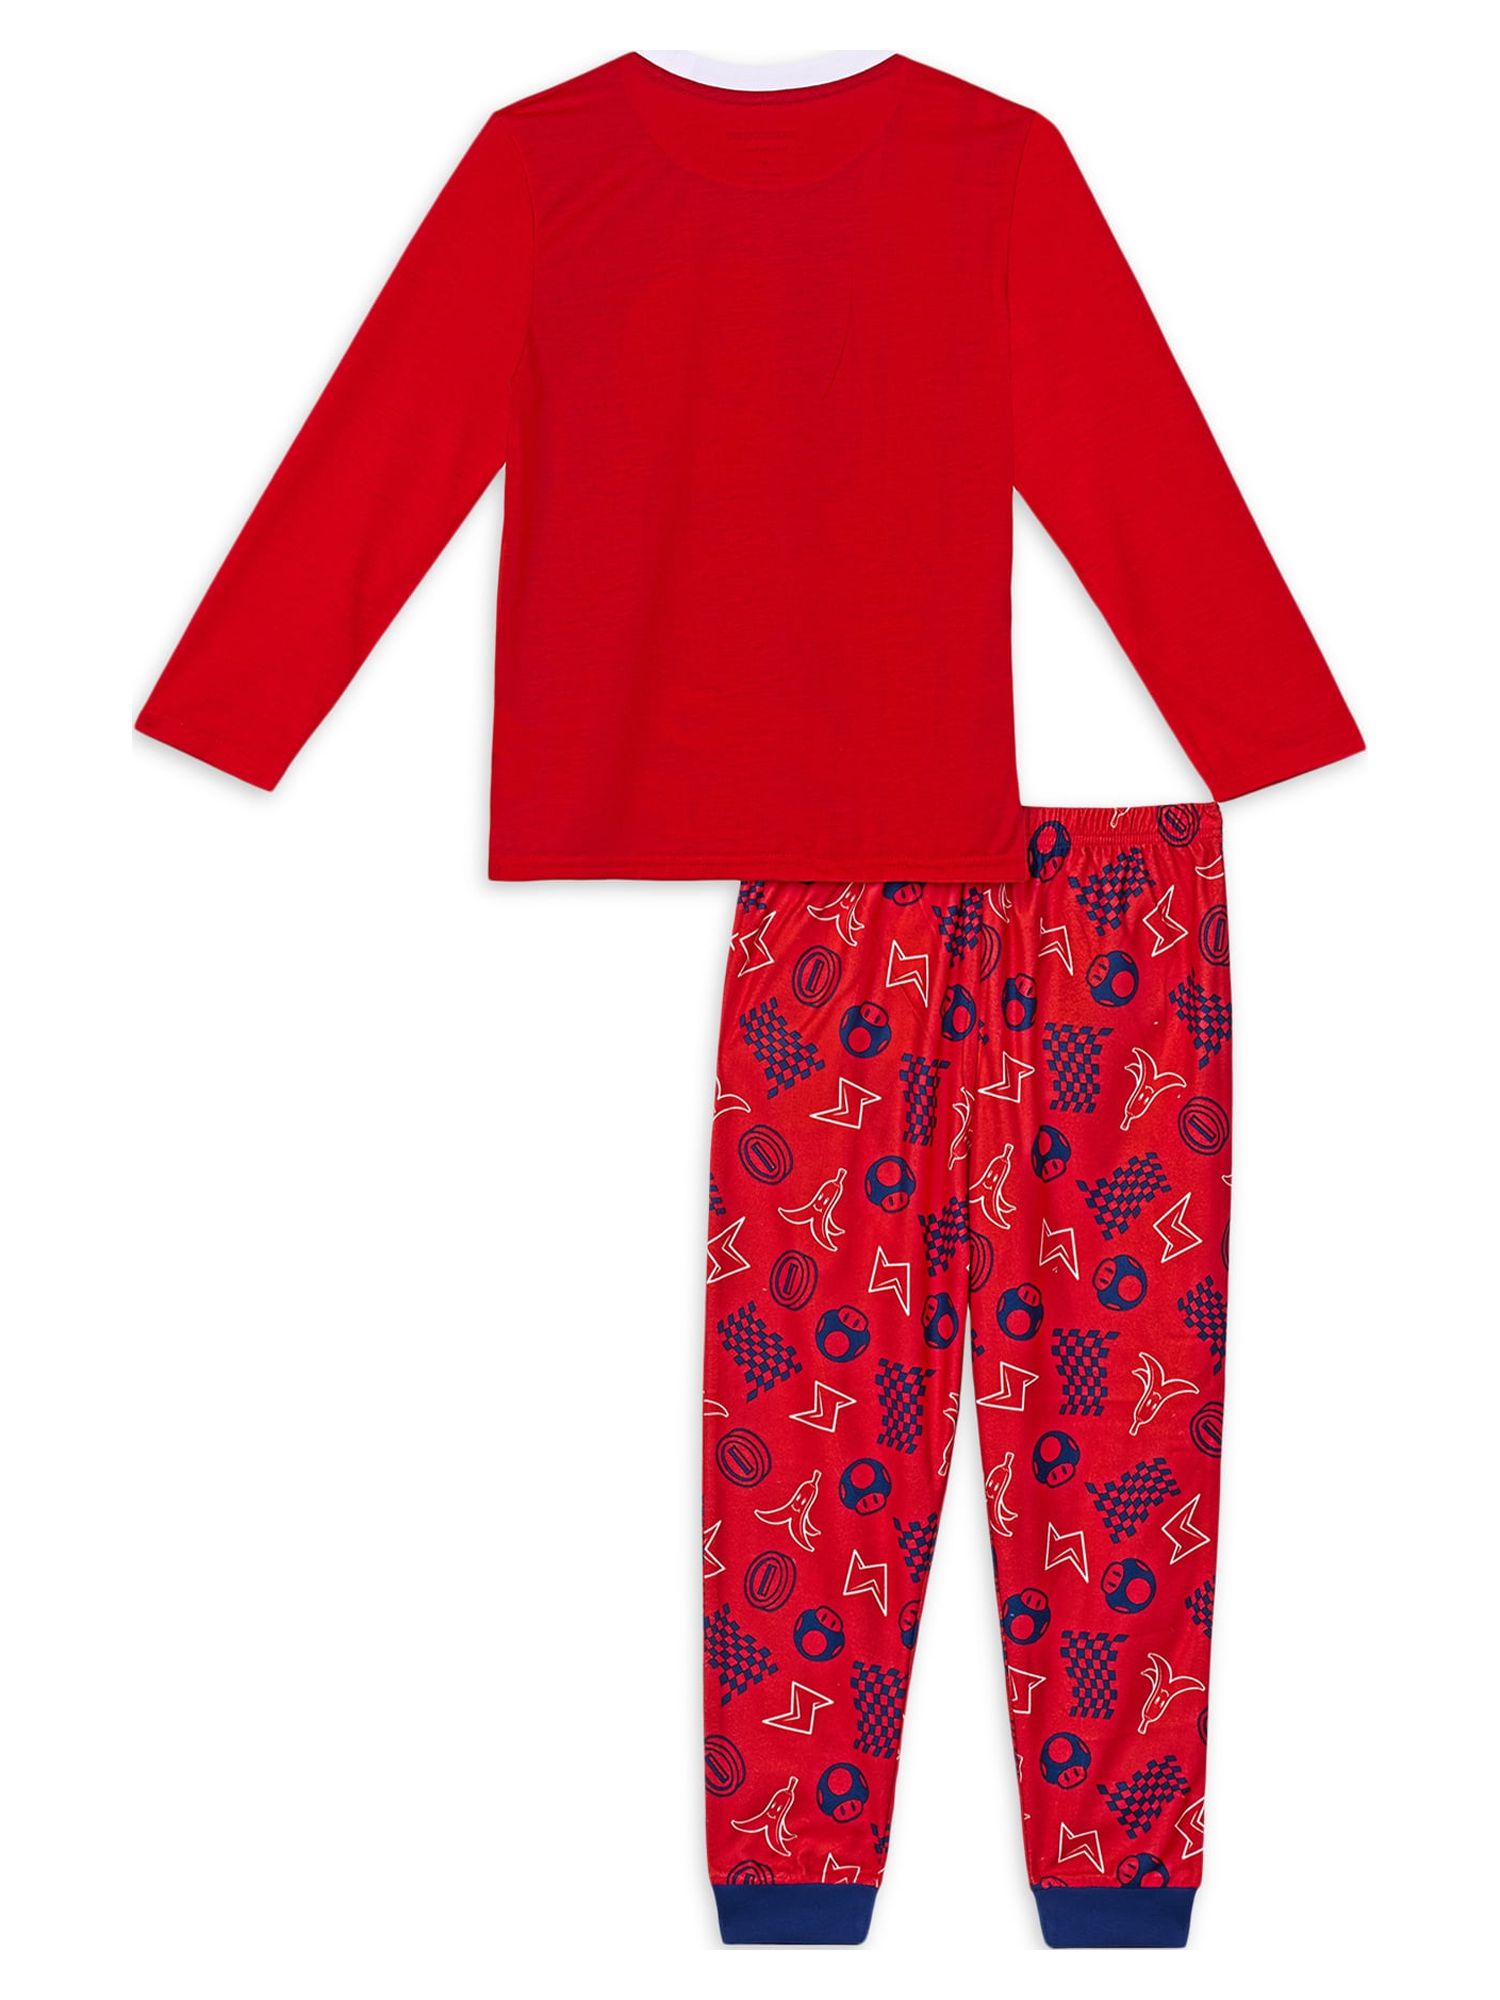 Mario Bro Boys Long Sleeve Pajamas Set, 2-Piece, Sizes 4-12 - image 2 of 4